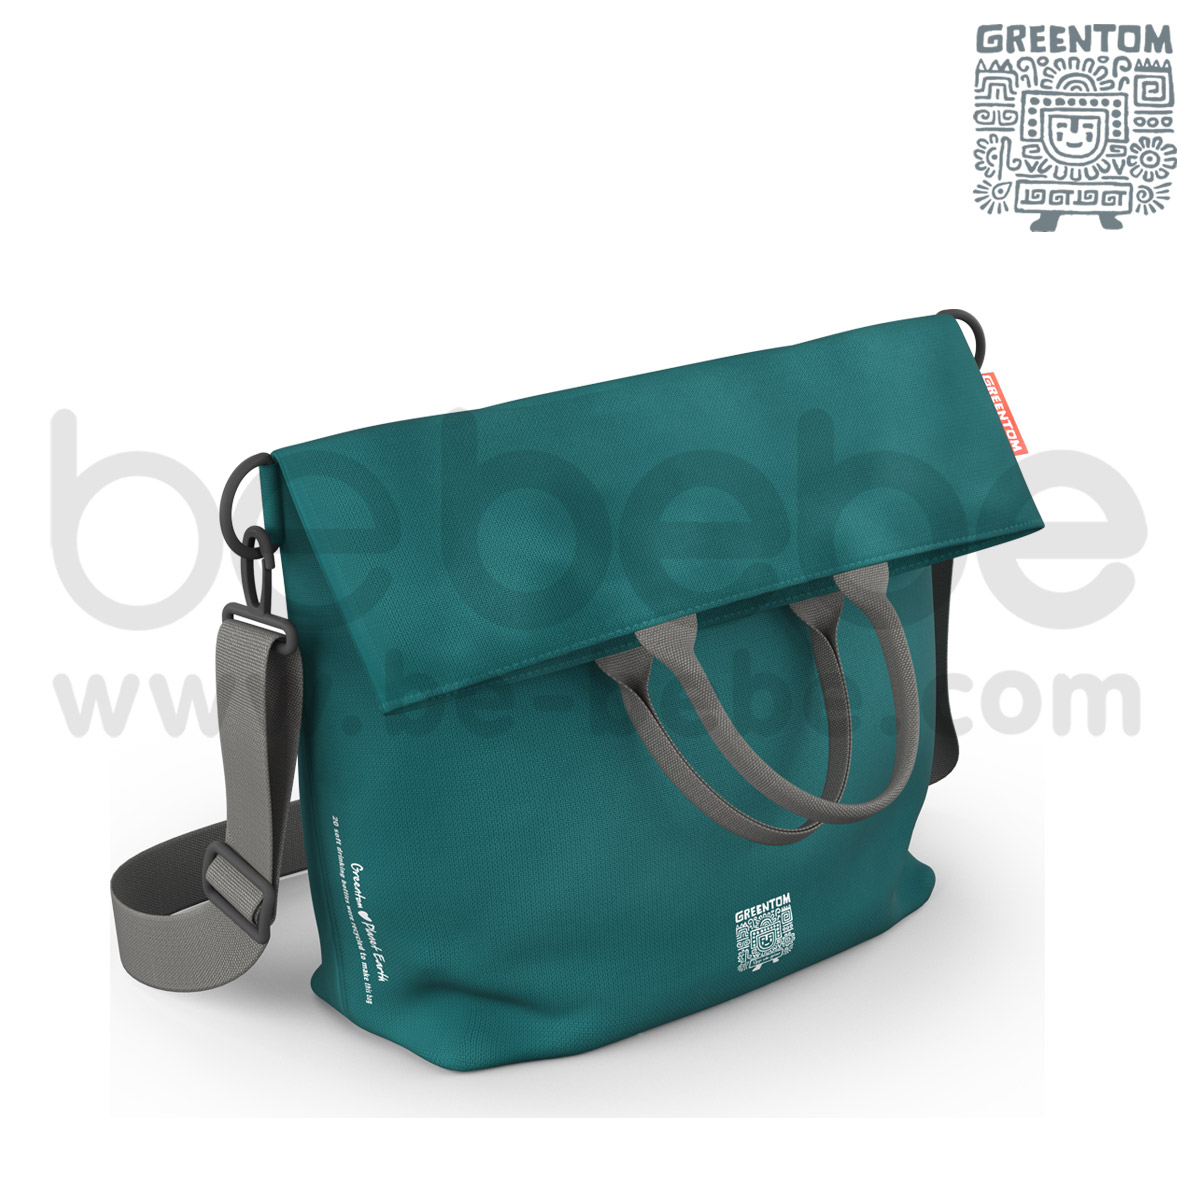 Greentom : กระเป๋าใส่ผ้าอ้อม Diaper Bag / เขียว